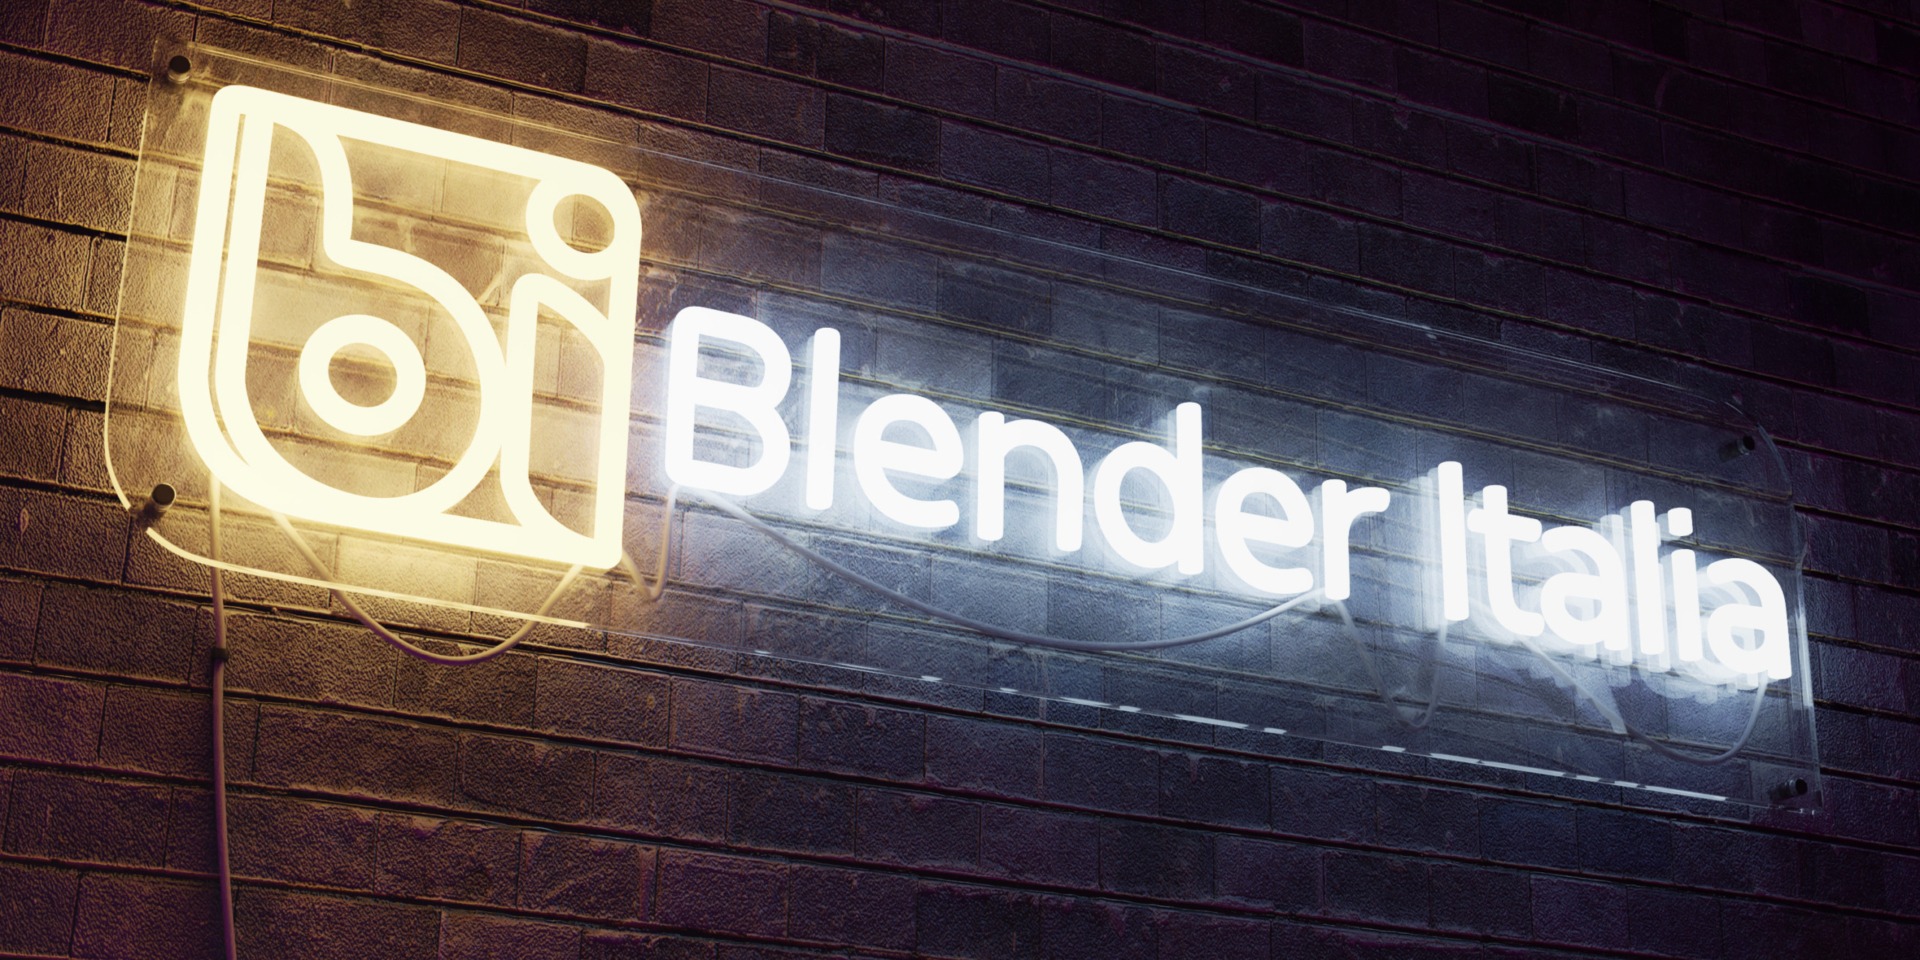 blender-italia-3